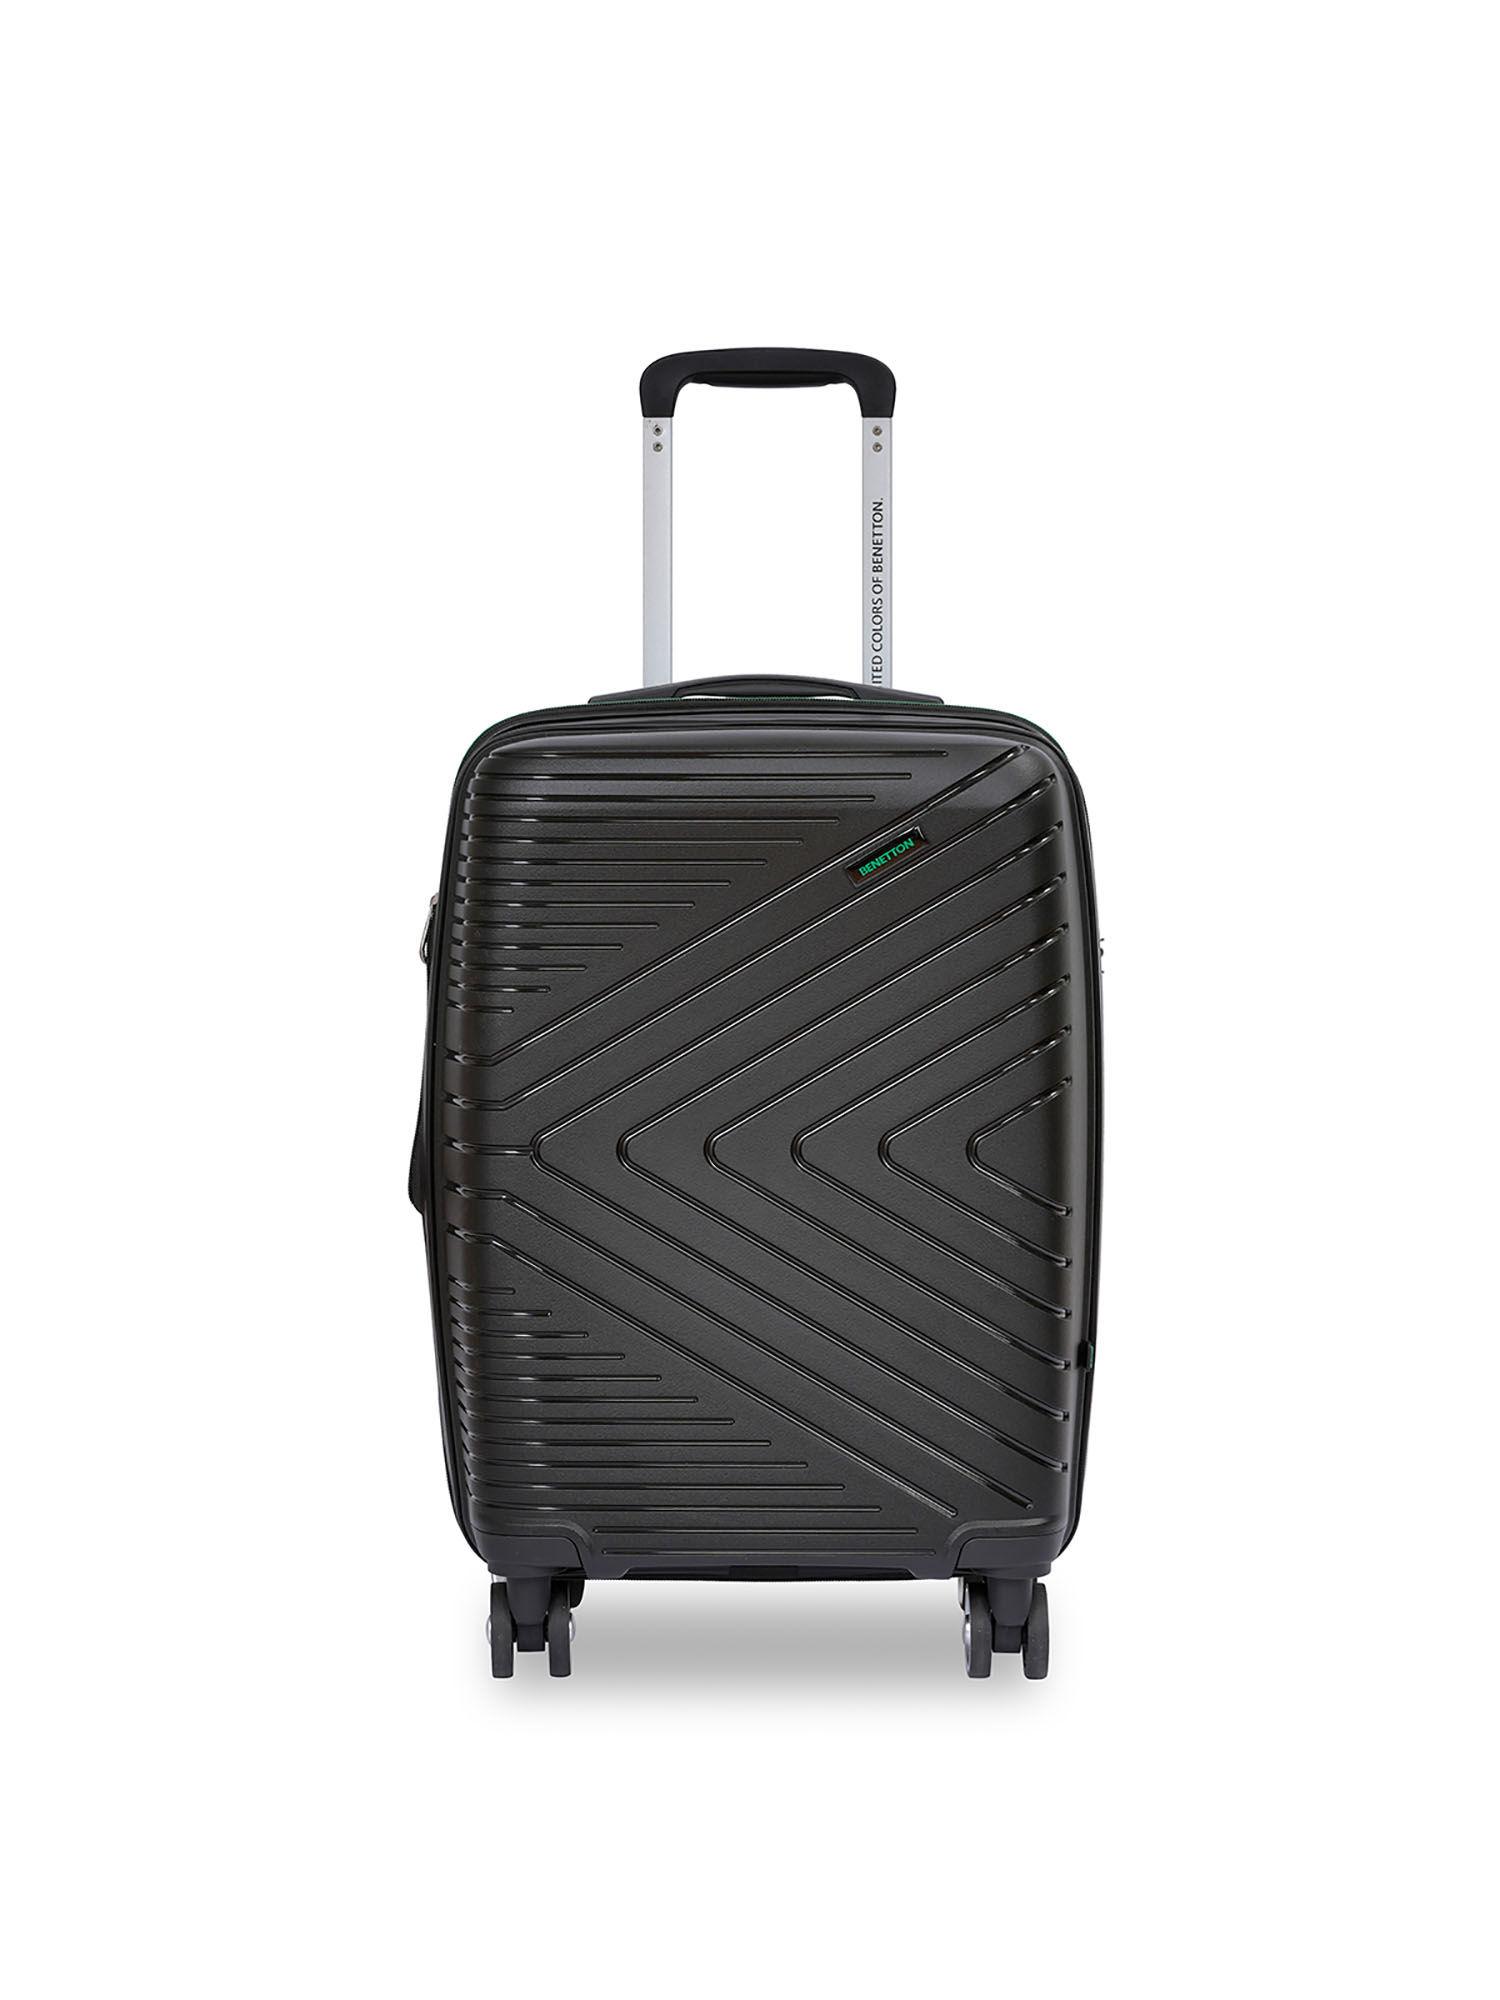 jasper unisex hard luggage - black, 56cm cabin trolley bag